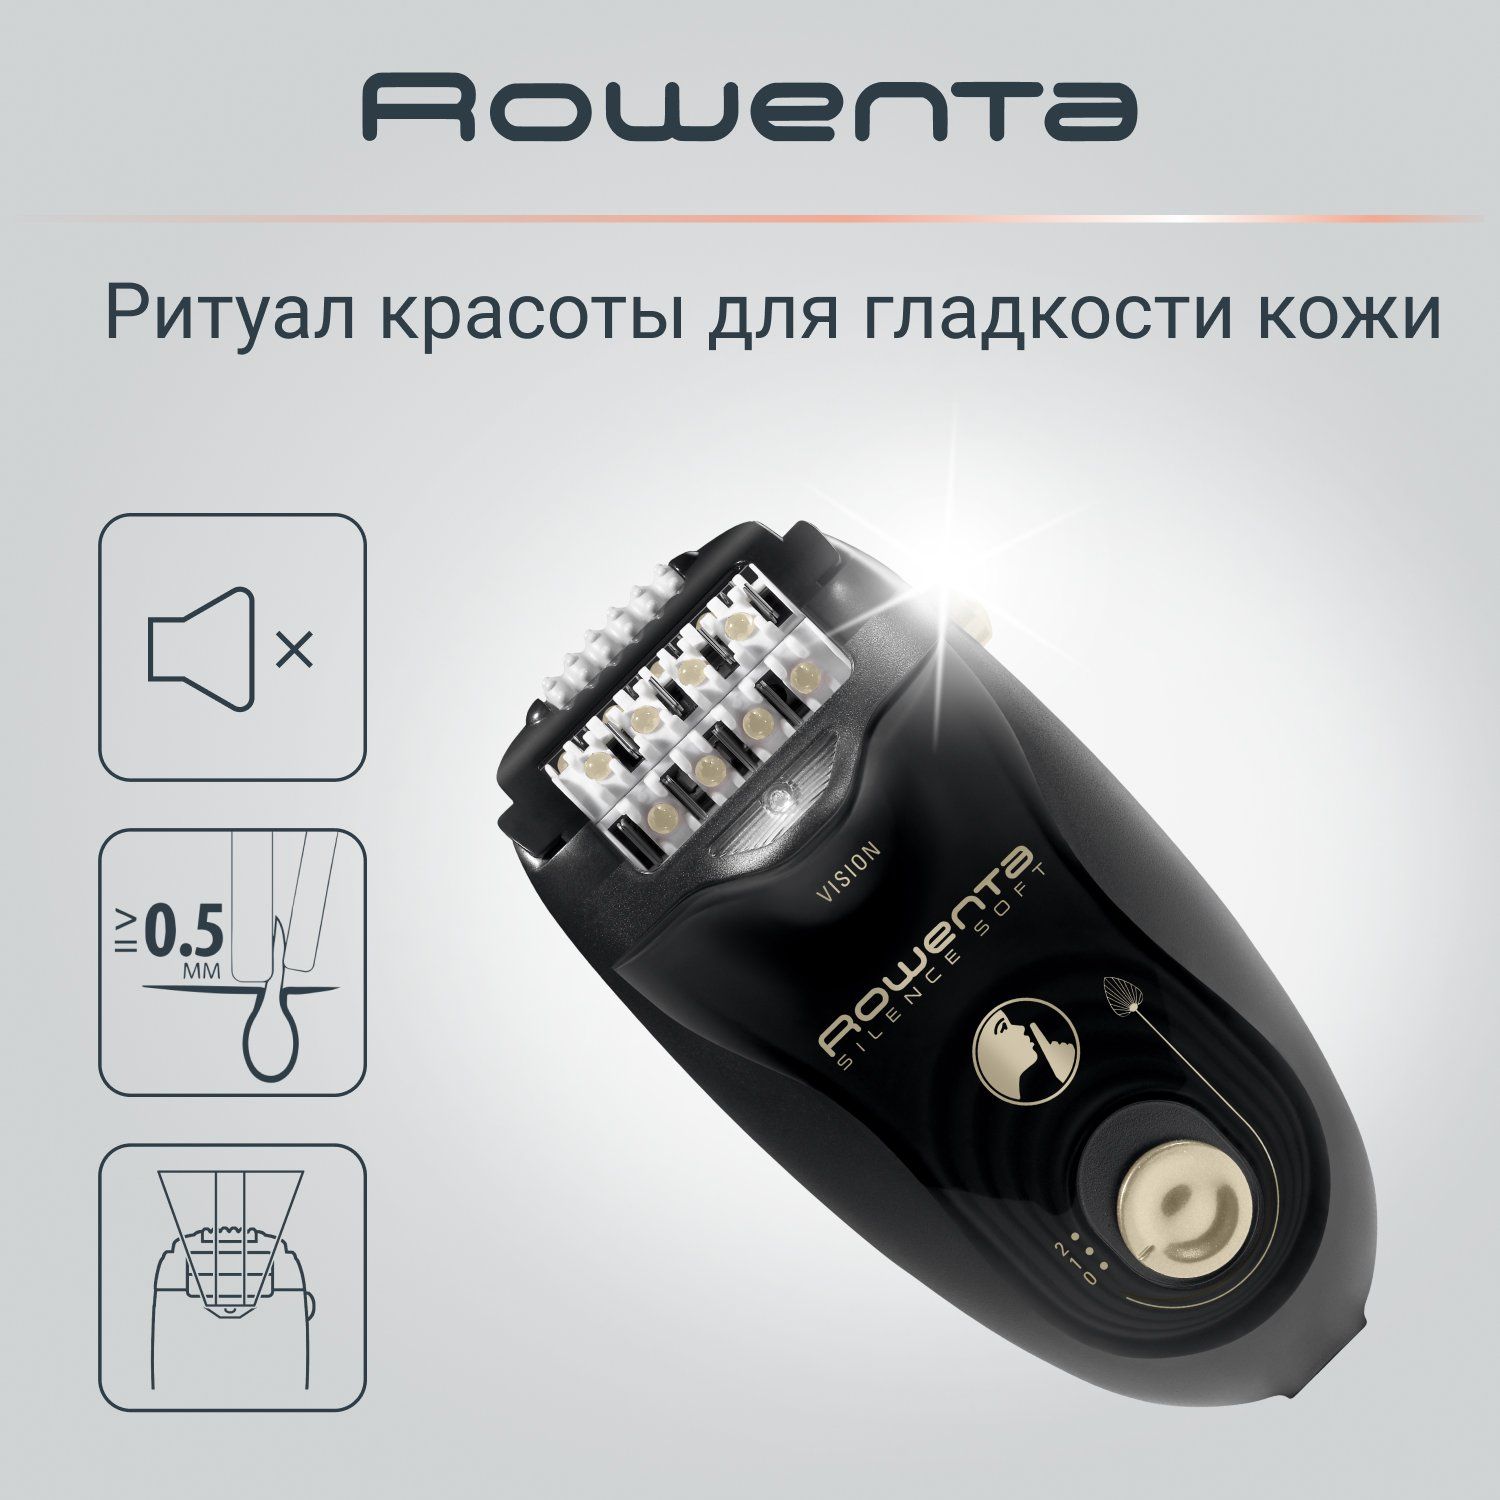 Эпилятор Rowenta Silence Soft EP5628F0, черный эпилятор soft sensation ep5700f1